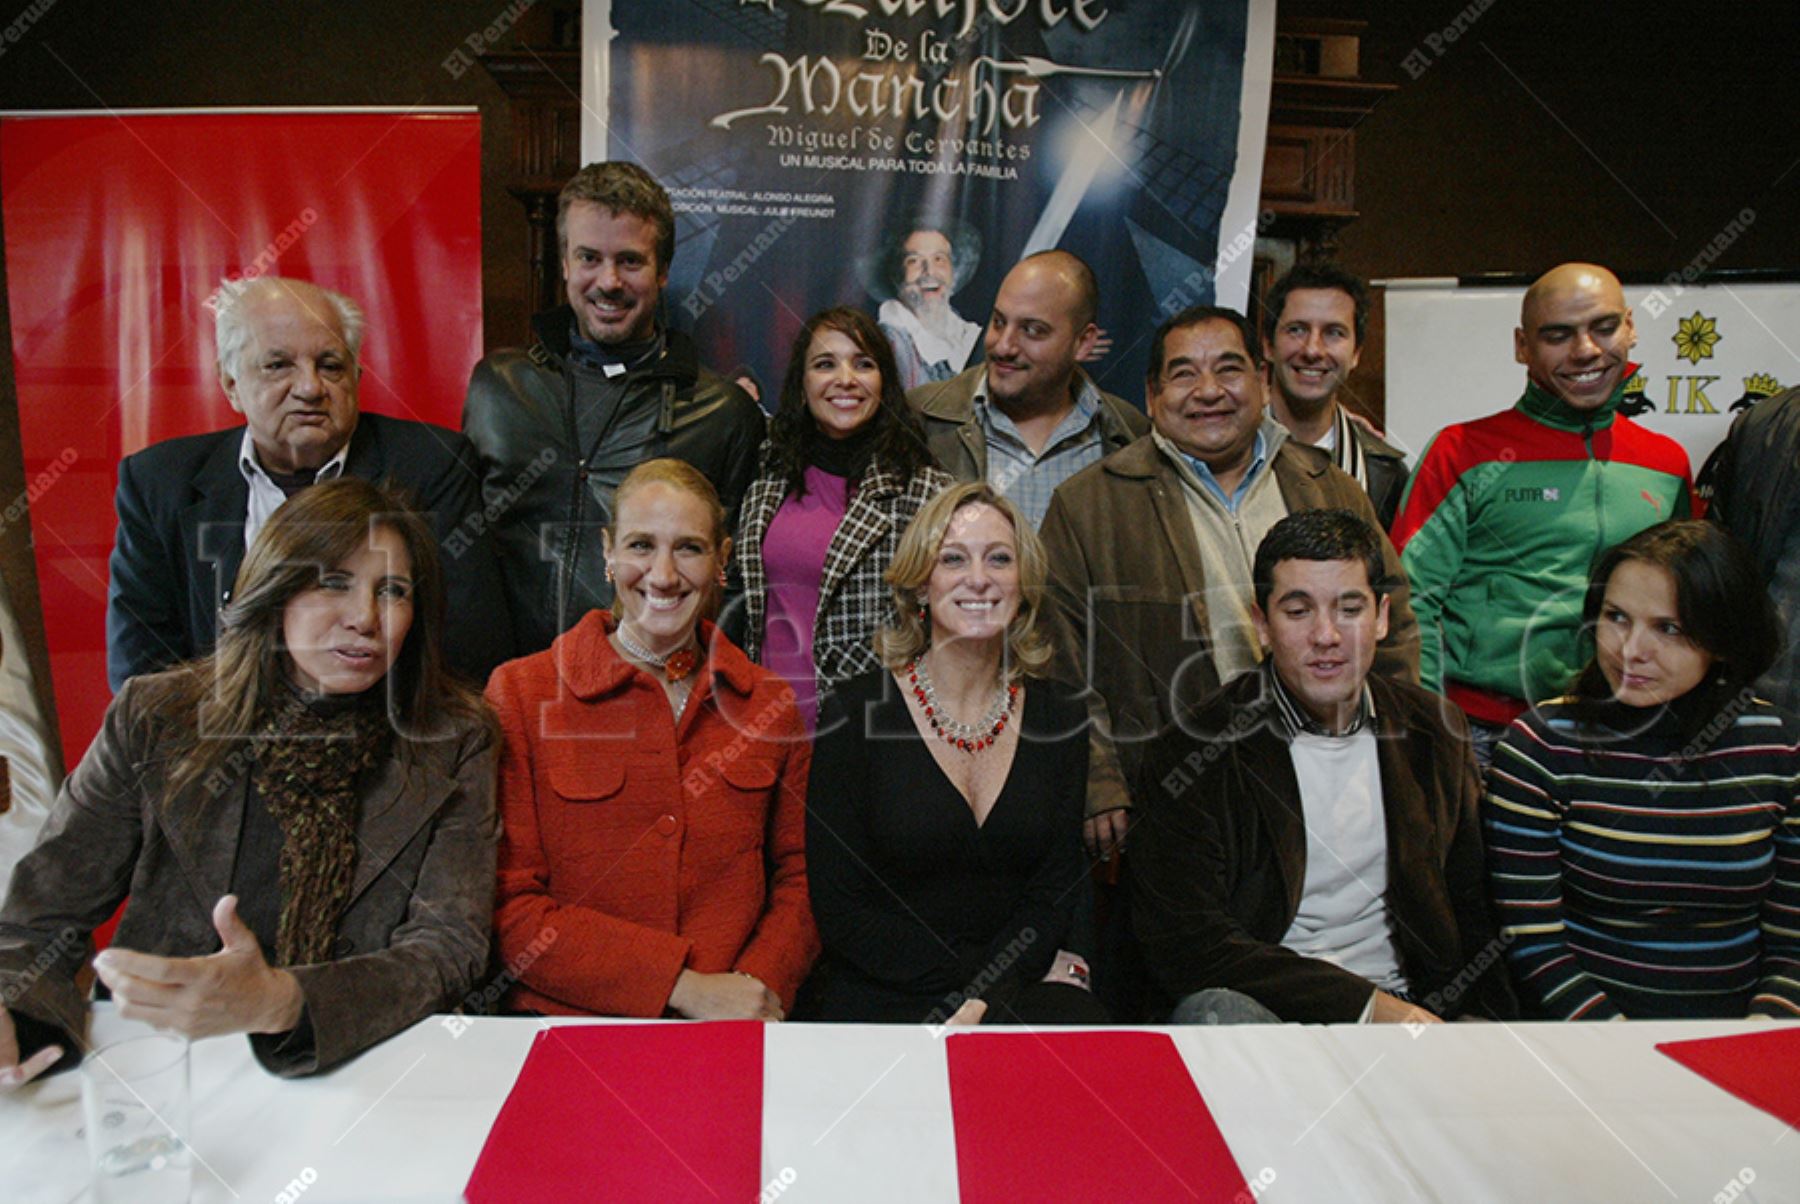 Lima - 19 mayo 2008 / Elenco de actores del musical, Don Quijote de la Mancha. 
Foto: Archivo / El Peruano